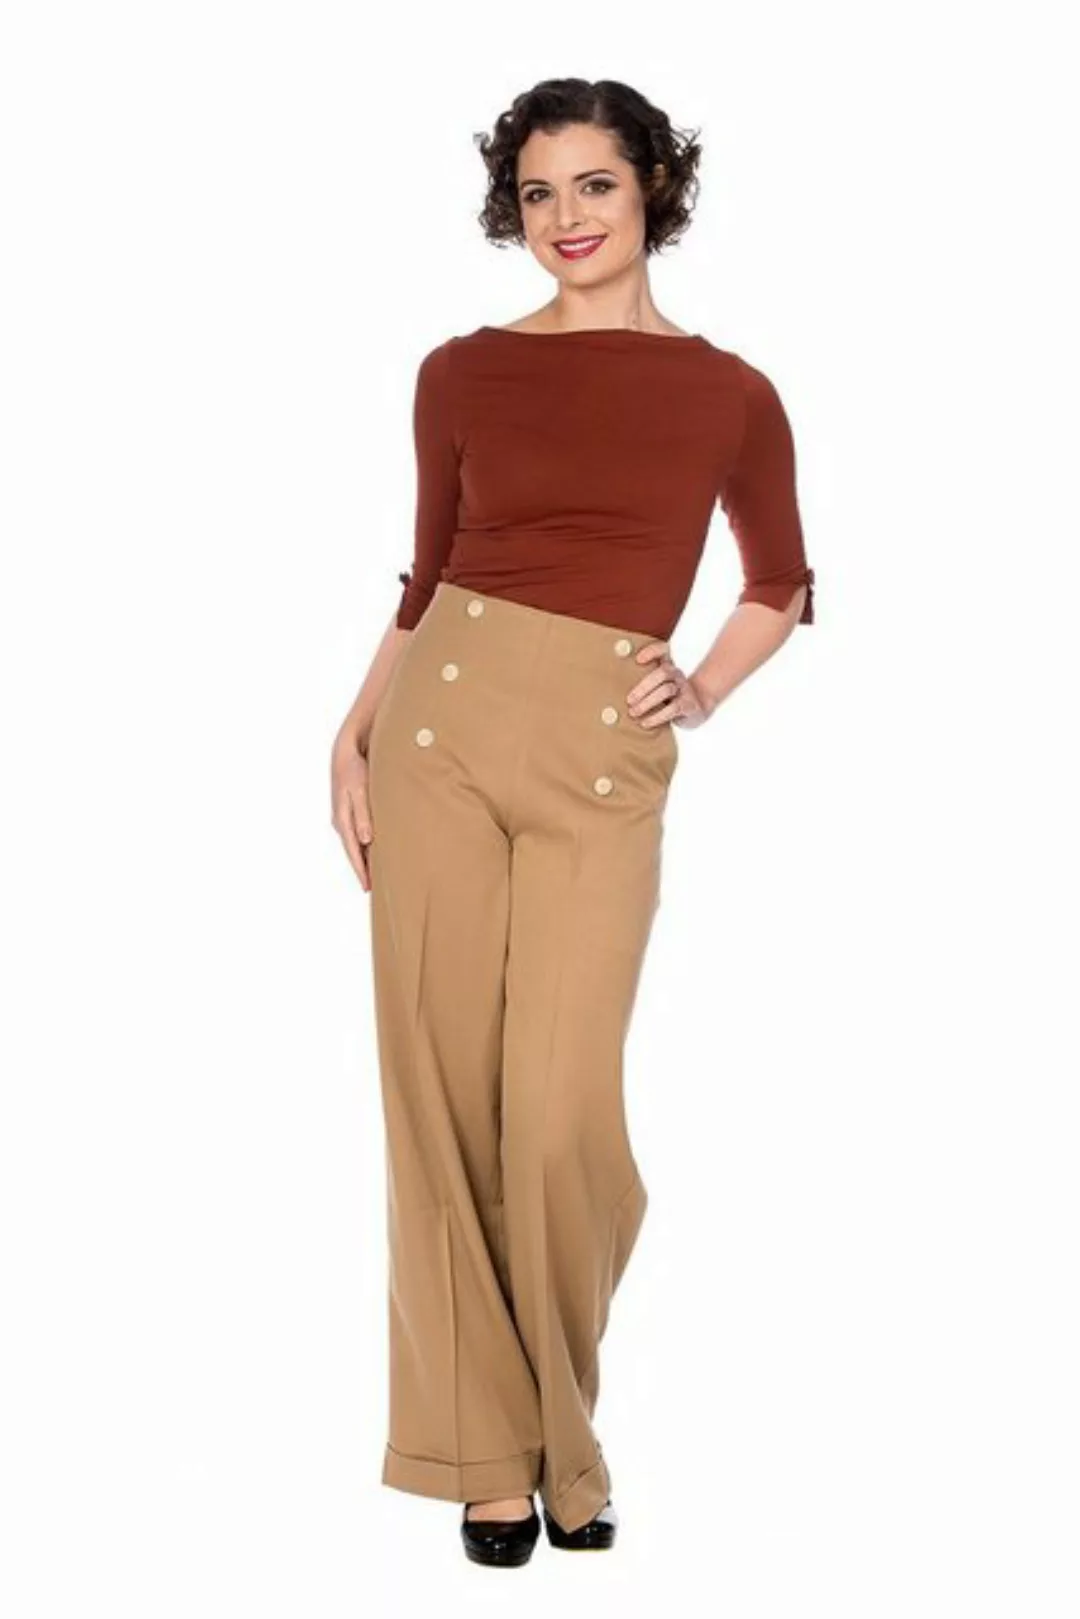 Banned Marlene-Hose Retro Adventures Ahead Tan Braun Vintage Trousers 40er günstig online kaufen